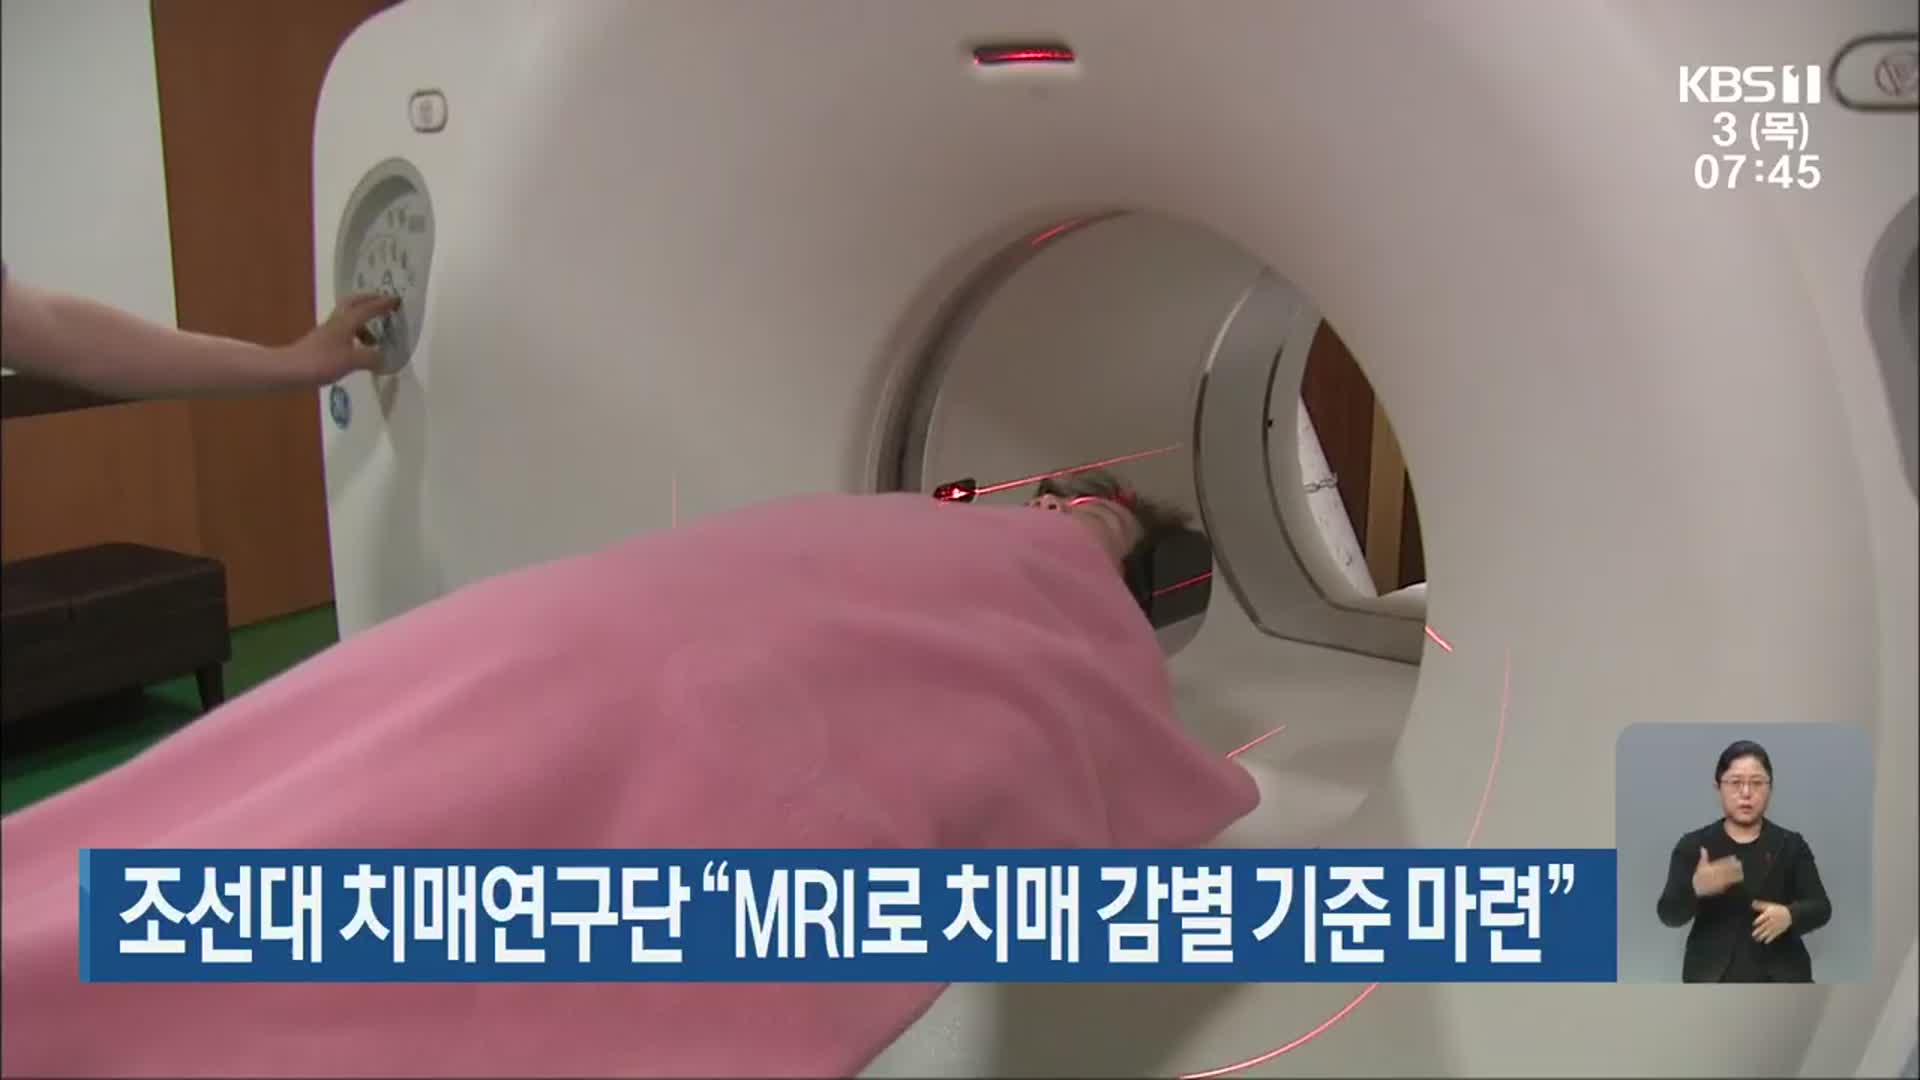 조선대 치매연구단 “MRI로 치매 감별 기준 마련”